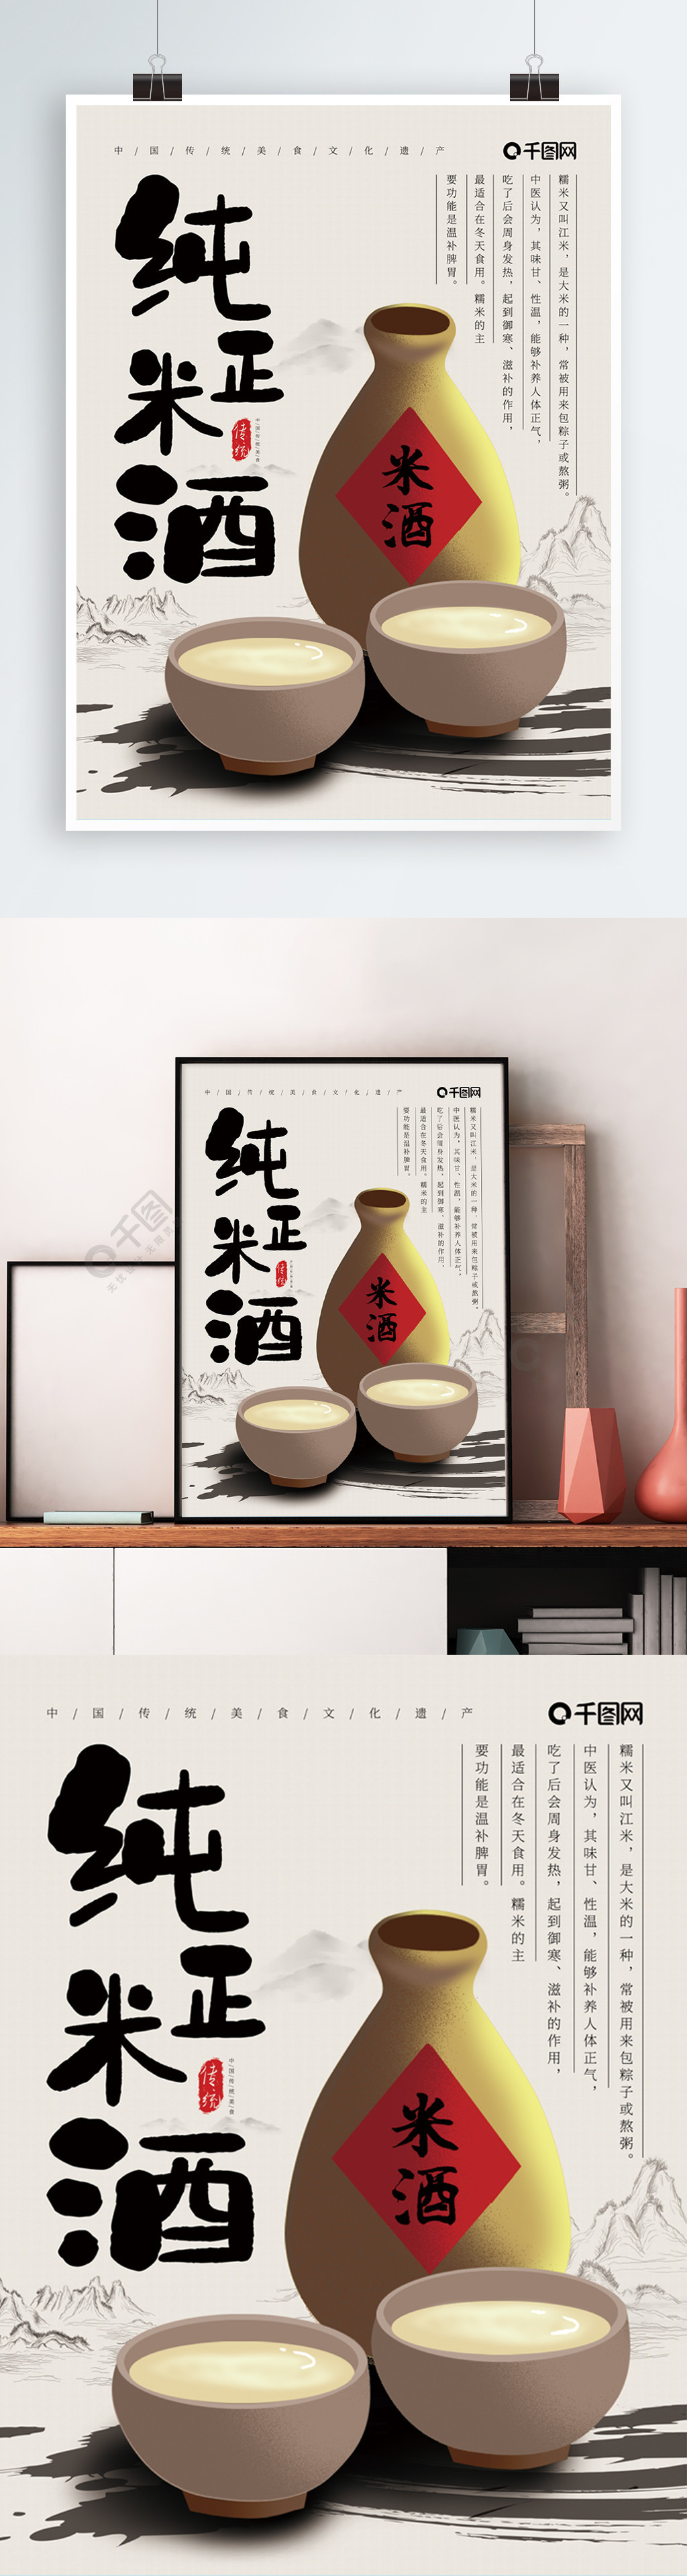 中国风百年老窖美味米酒海报2年前发布